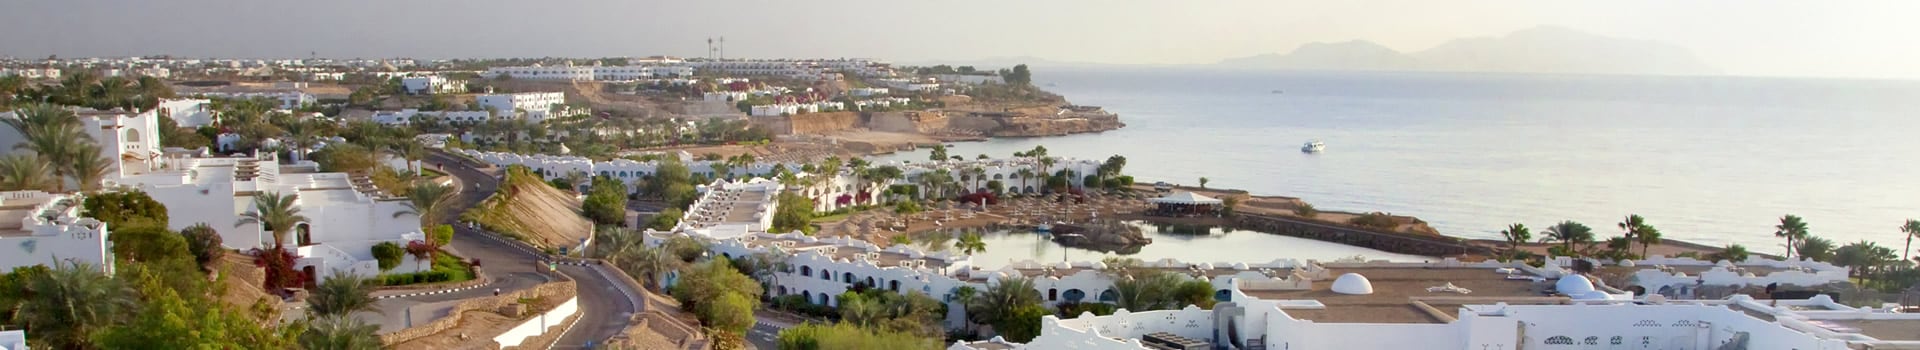 Oporto - Sharm el sheikh